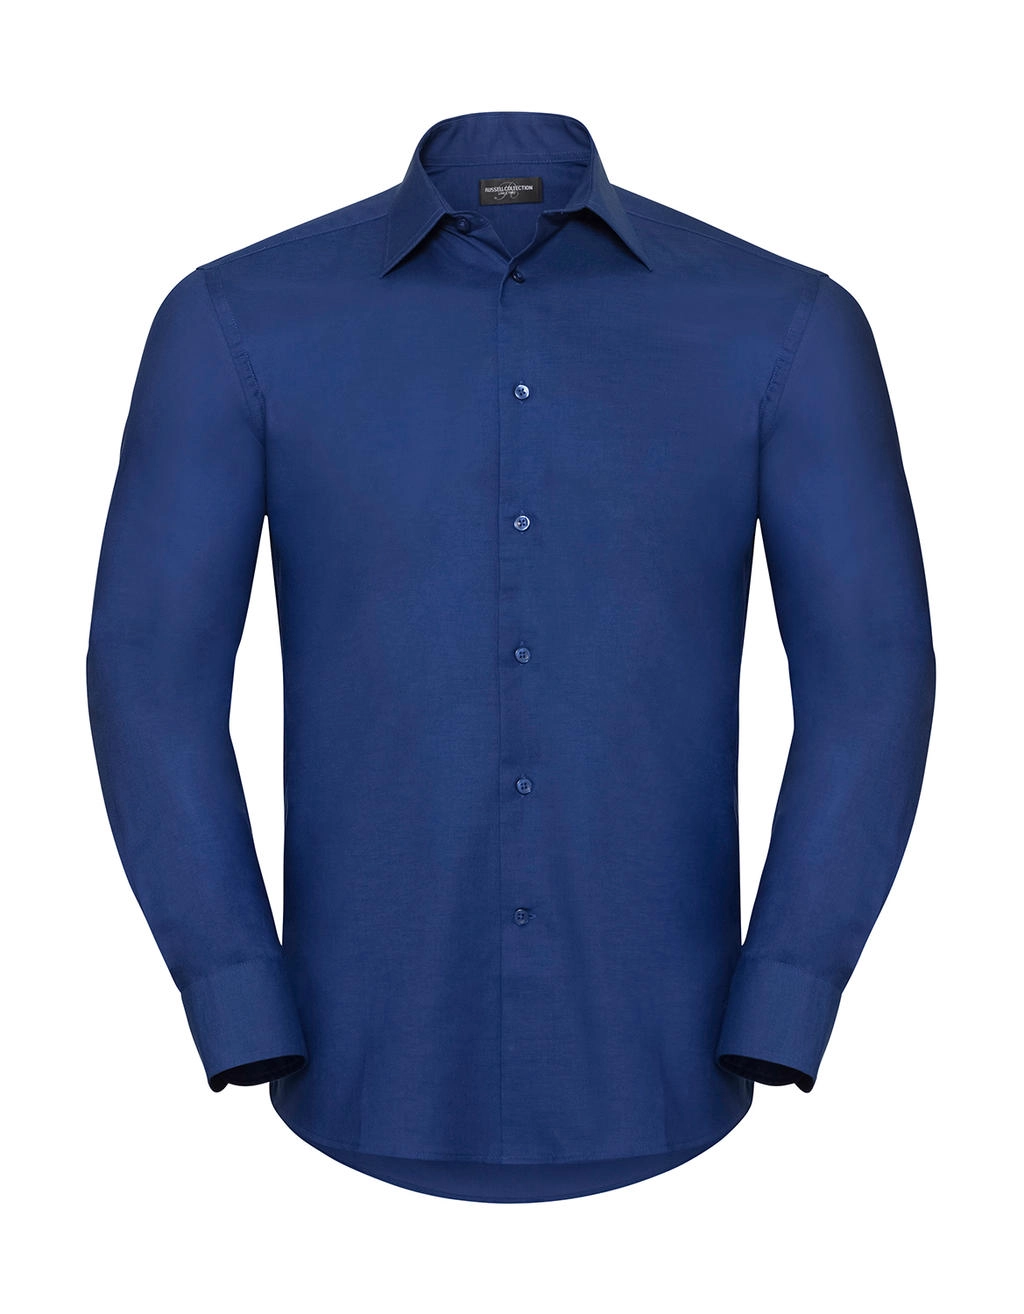 Oxford Shirt LS zum Besticken und Bedrucken in der Farbe Bright Royal mit Ihren Logo, Schriftzug oder Motiv.